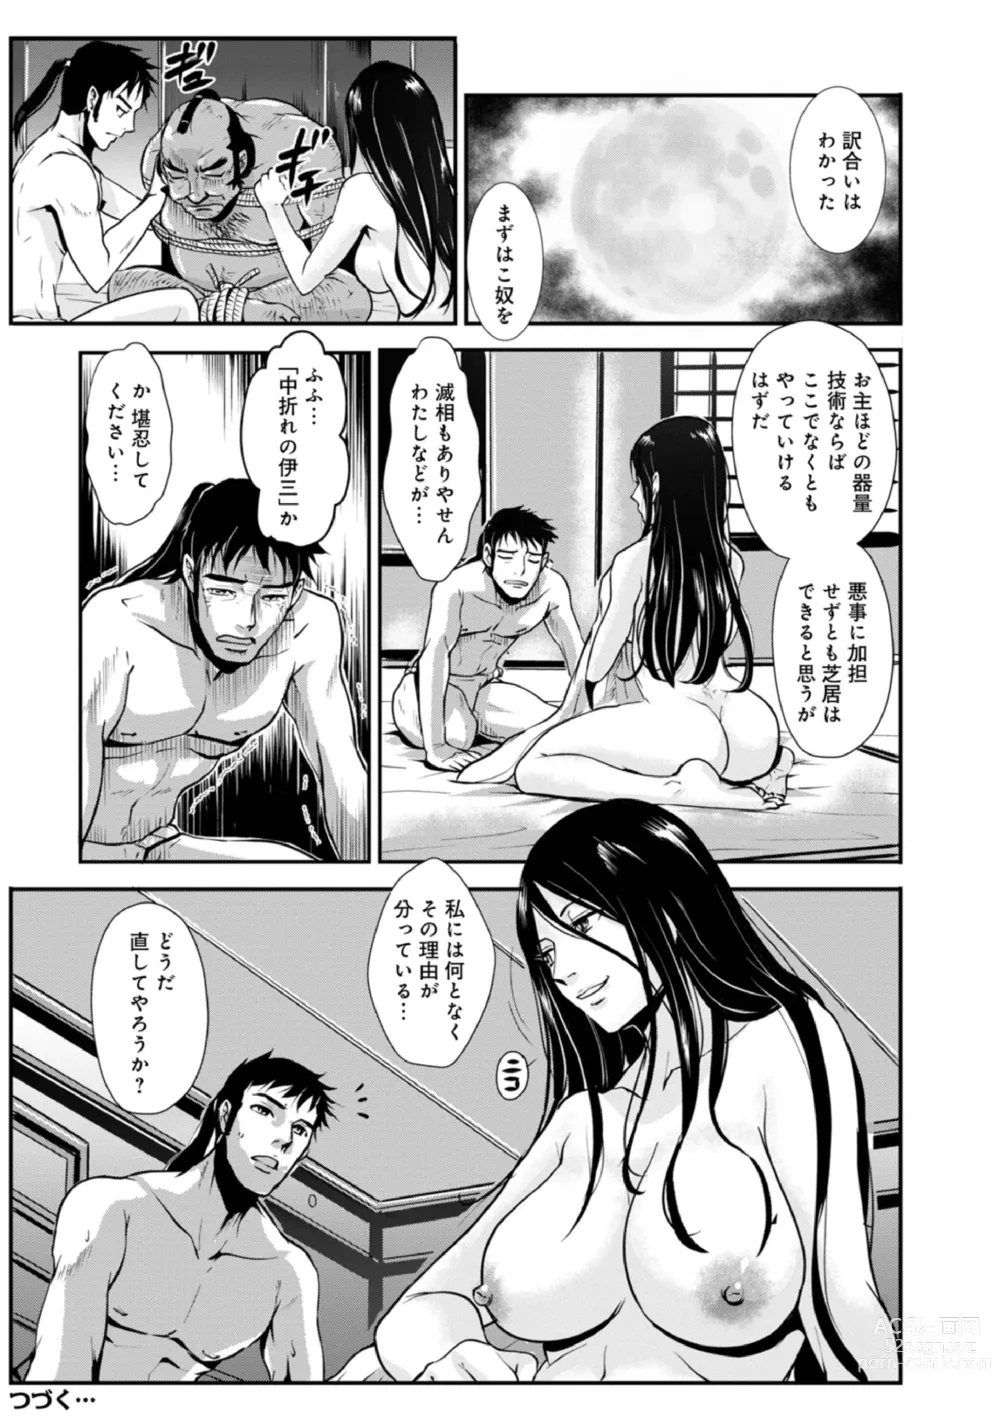 Page 20 of manga Harami samurai 15 ~Biyaku ni Nureru Onna Kenshi no Inwai na Nikutsubo~